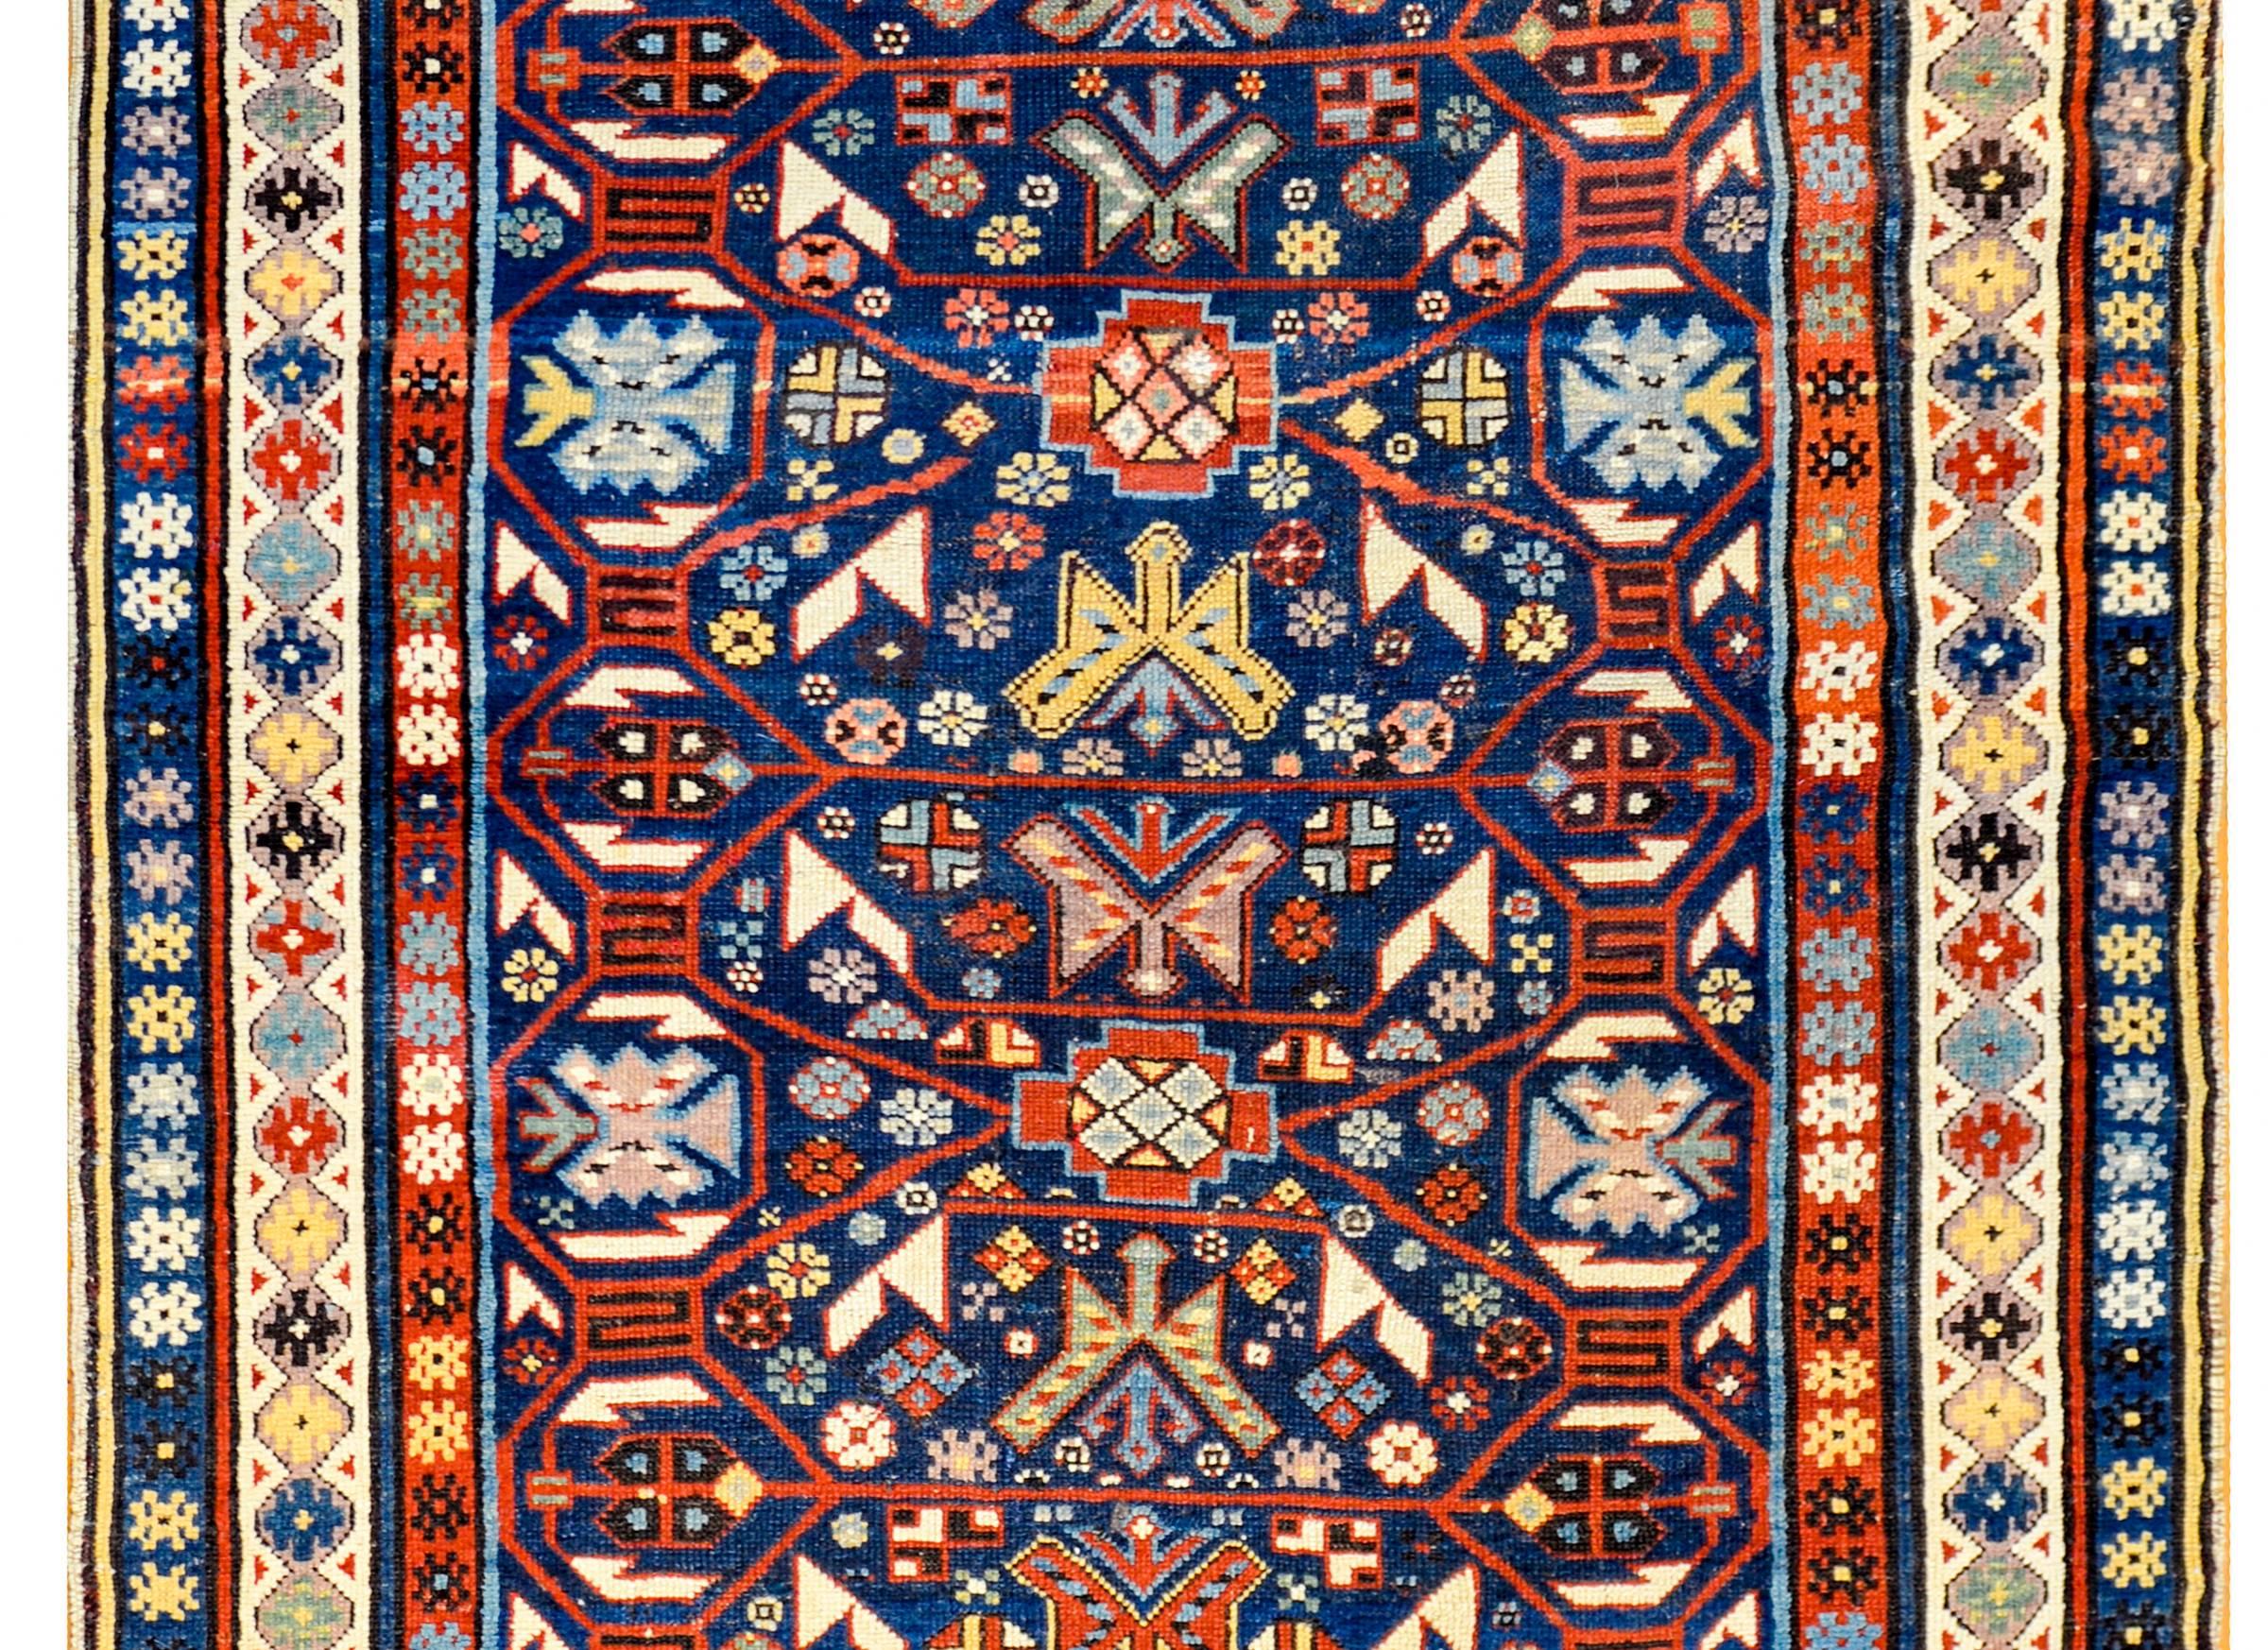 Un incroyable tapis Derbend datant de 1900 avec un motif floral stylisé multicolore densément tissé, avec un magnifique treillis cramoisi en dentelle recouvrant le fond indigo foncé. La bordure est magnifique, avec trois bandes différentes à motifs